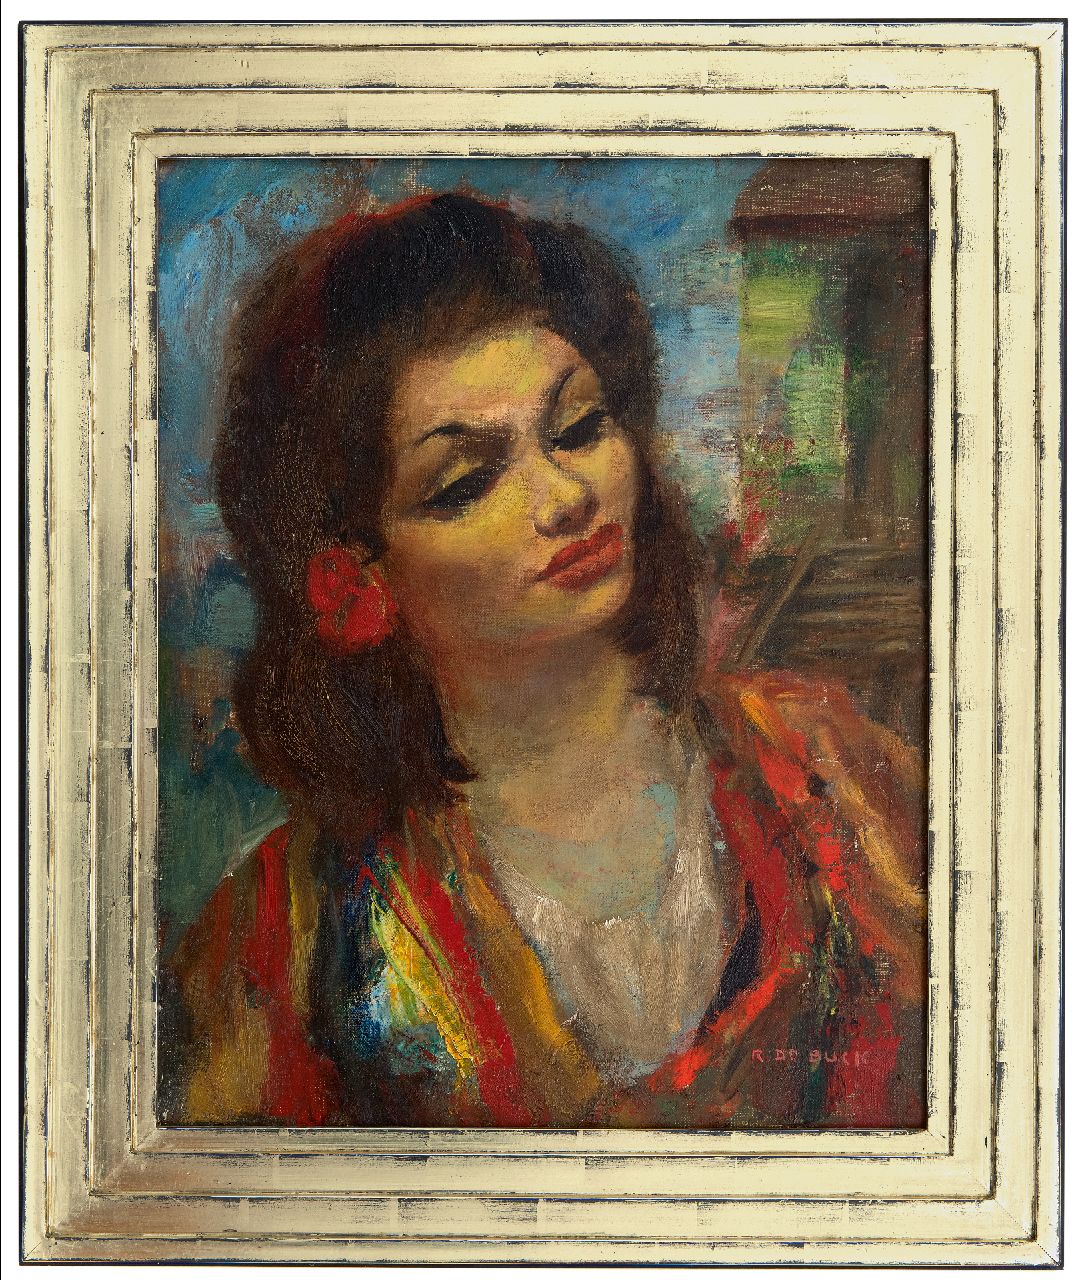 Buck R. de | Raphaël de Buck | Gemälde zum Verkauf angeboten | Zigeunertänzerin, Öl auf Leinwand 50,4 x 40,5 cm, Unterzeichnet u.r.